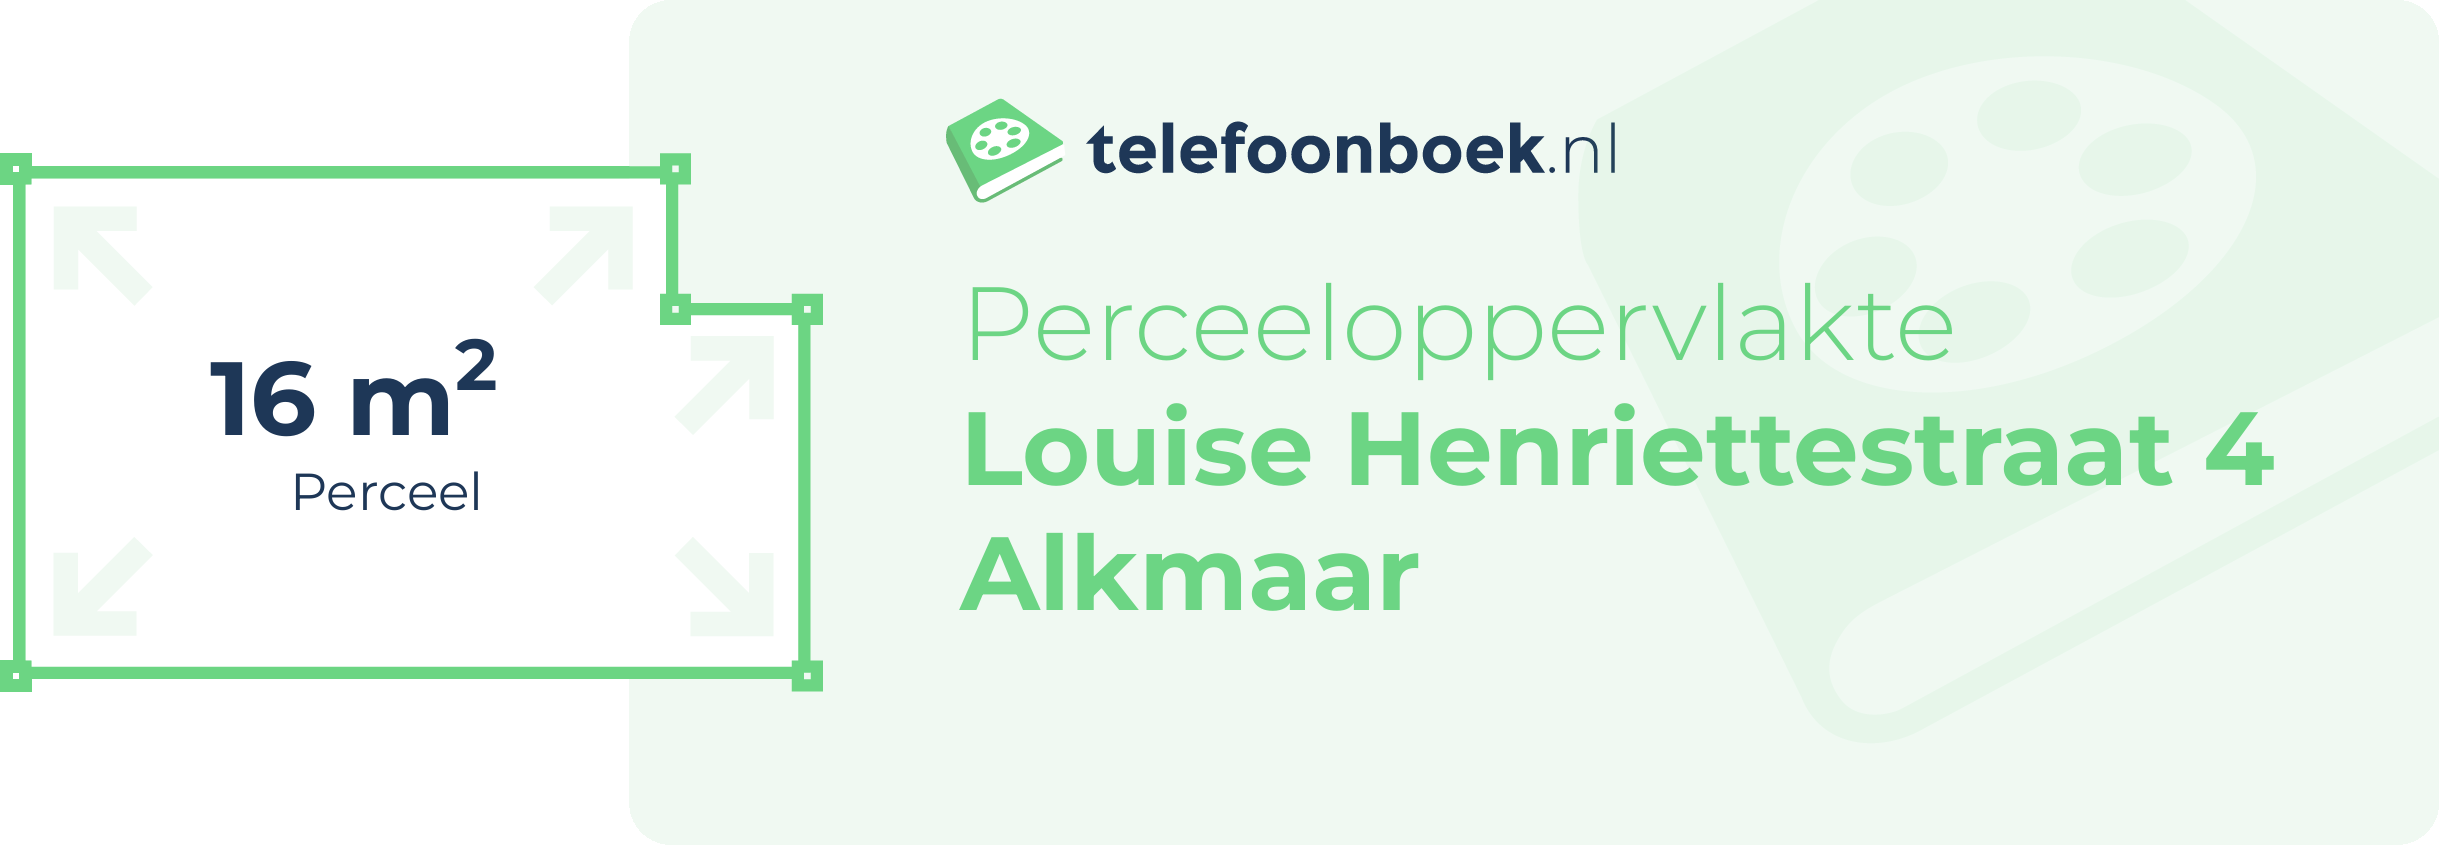 Perceeloppervlakte Louise Henriettestraat 4 Alkmaar